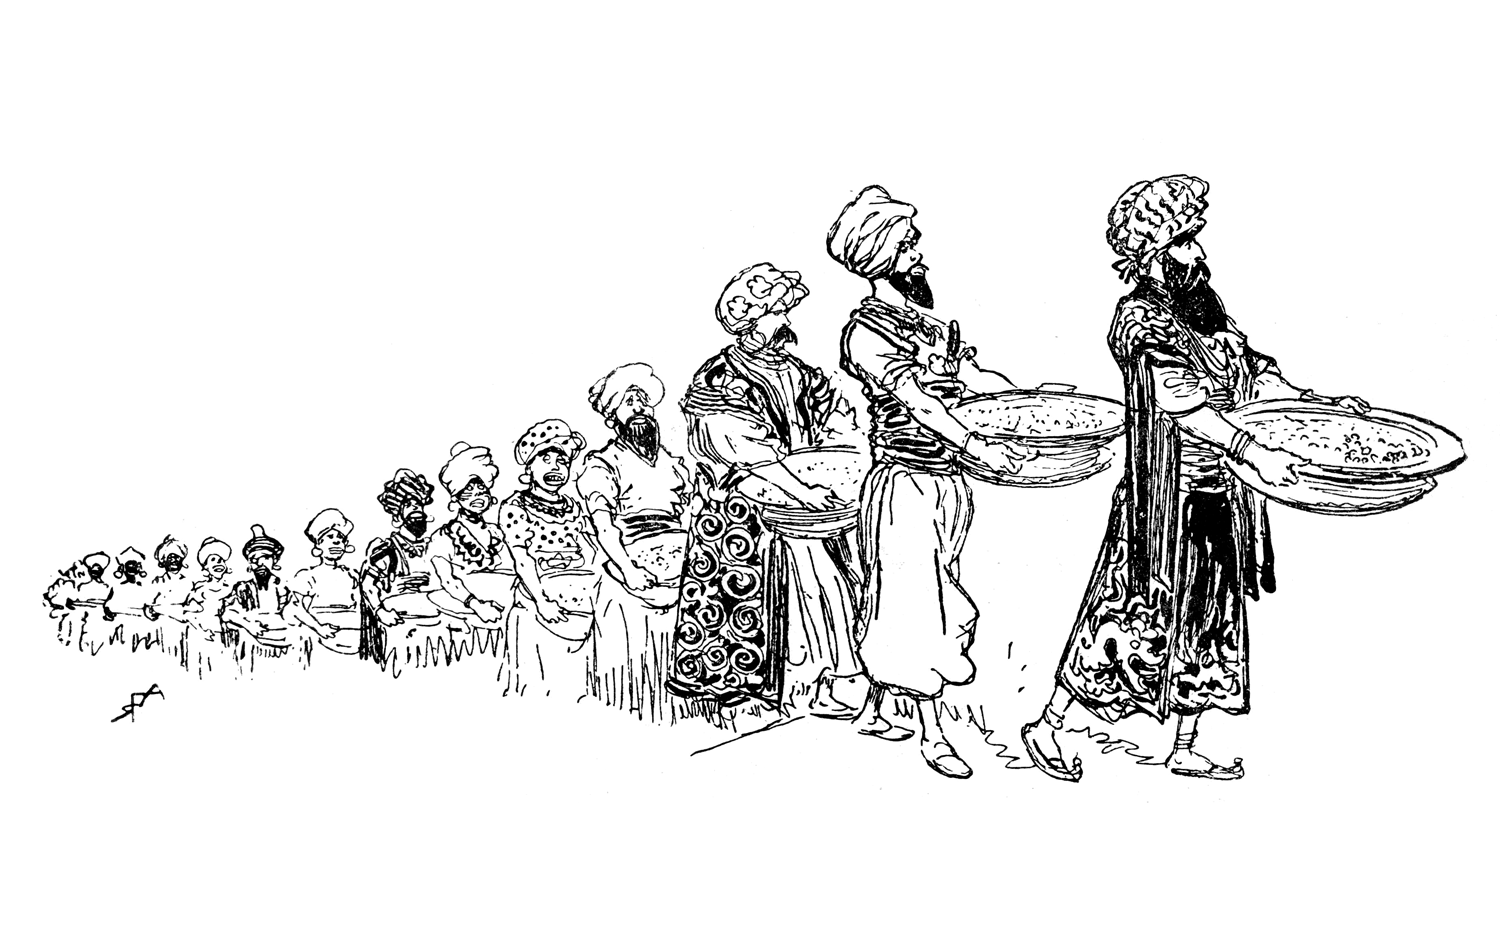 Os habitantes da terra deserta de Agrabah transportam os seus alimentos, uns atrás dos outros